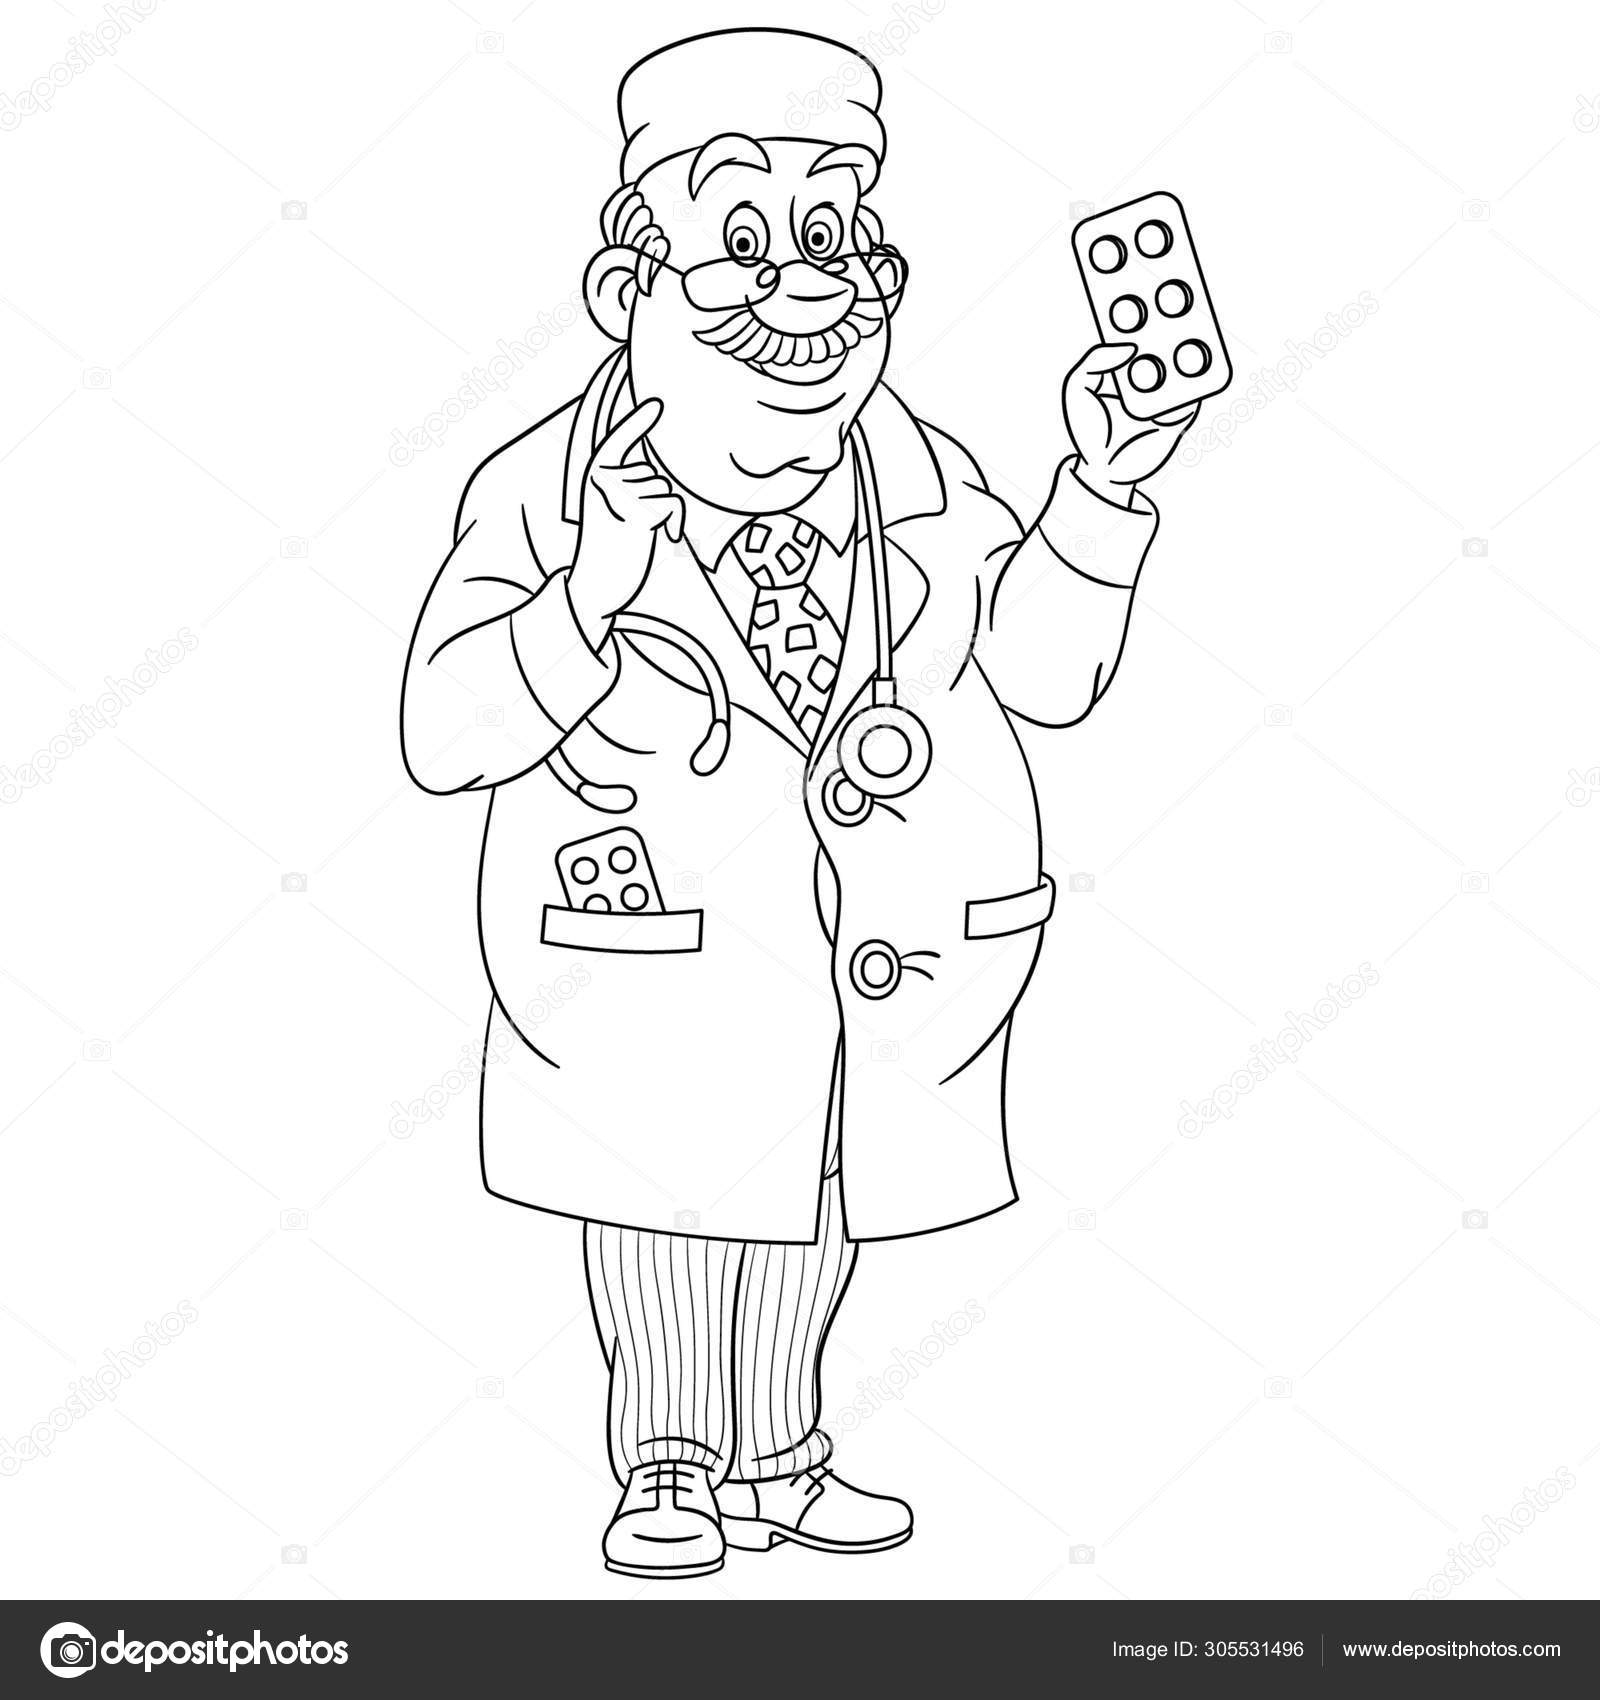 Página para colorir com médico médico doc imagem vetorial de Sybirko©  305531496